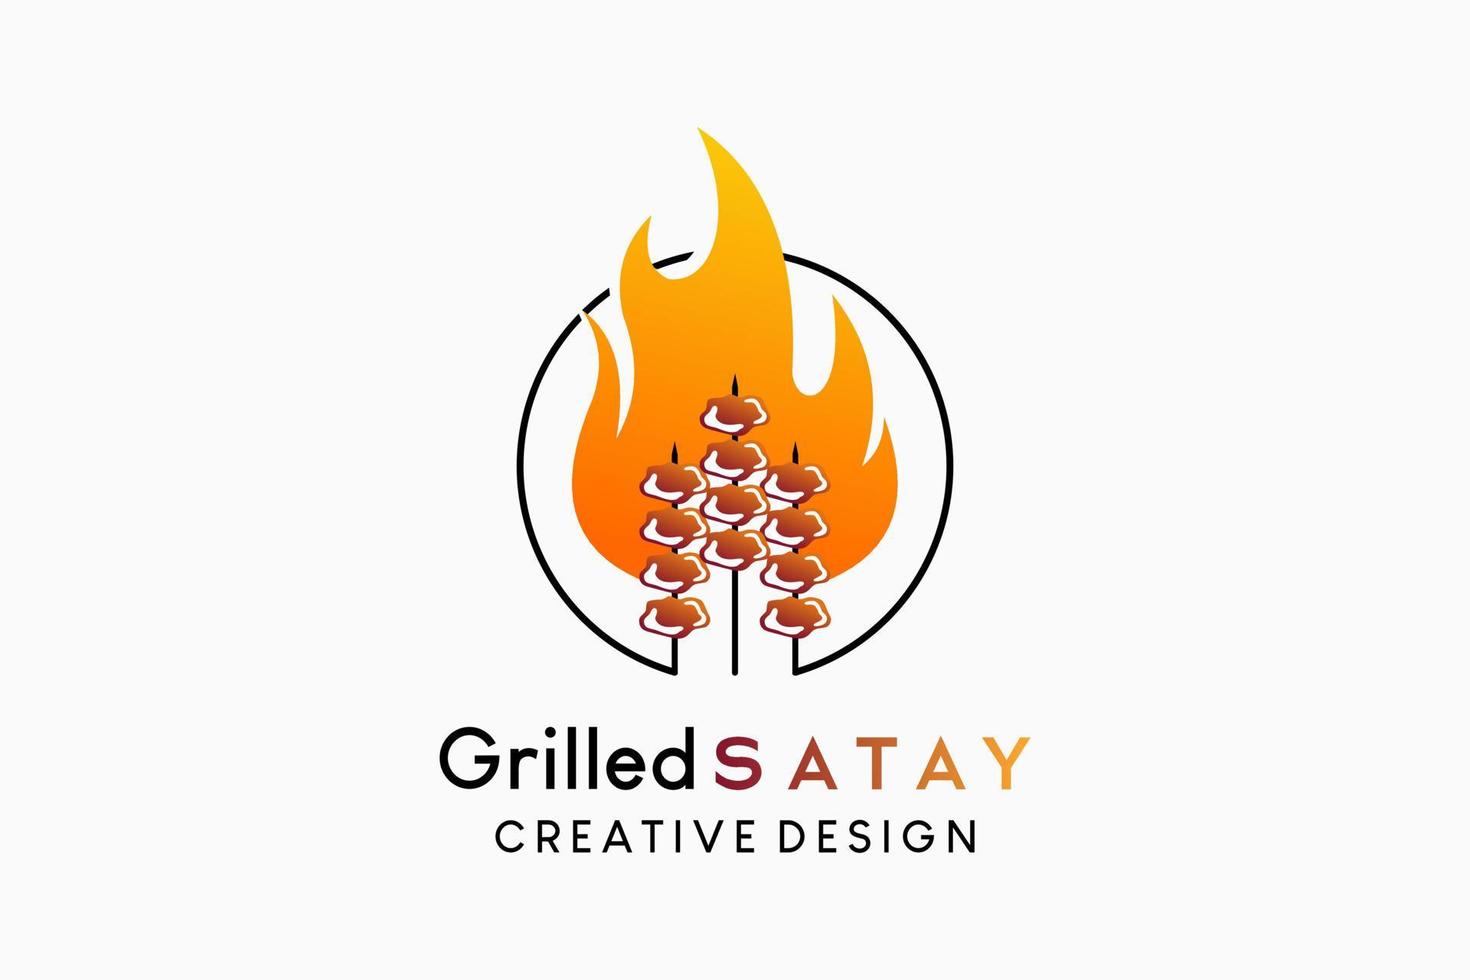 création de logo satay grillé avec concept créatif, icône satay et feu en cercle vecteur